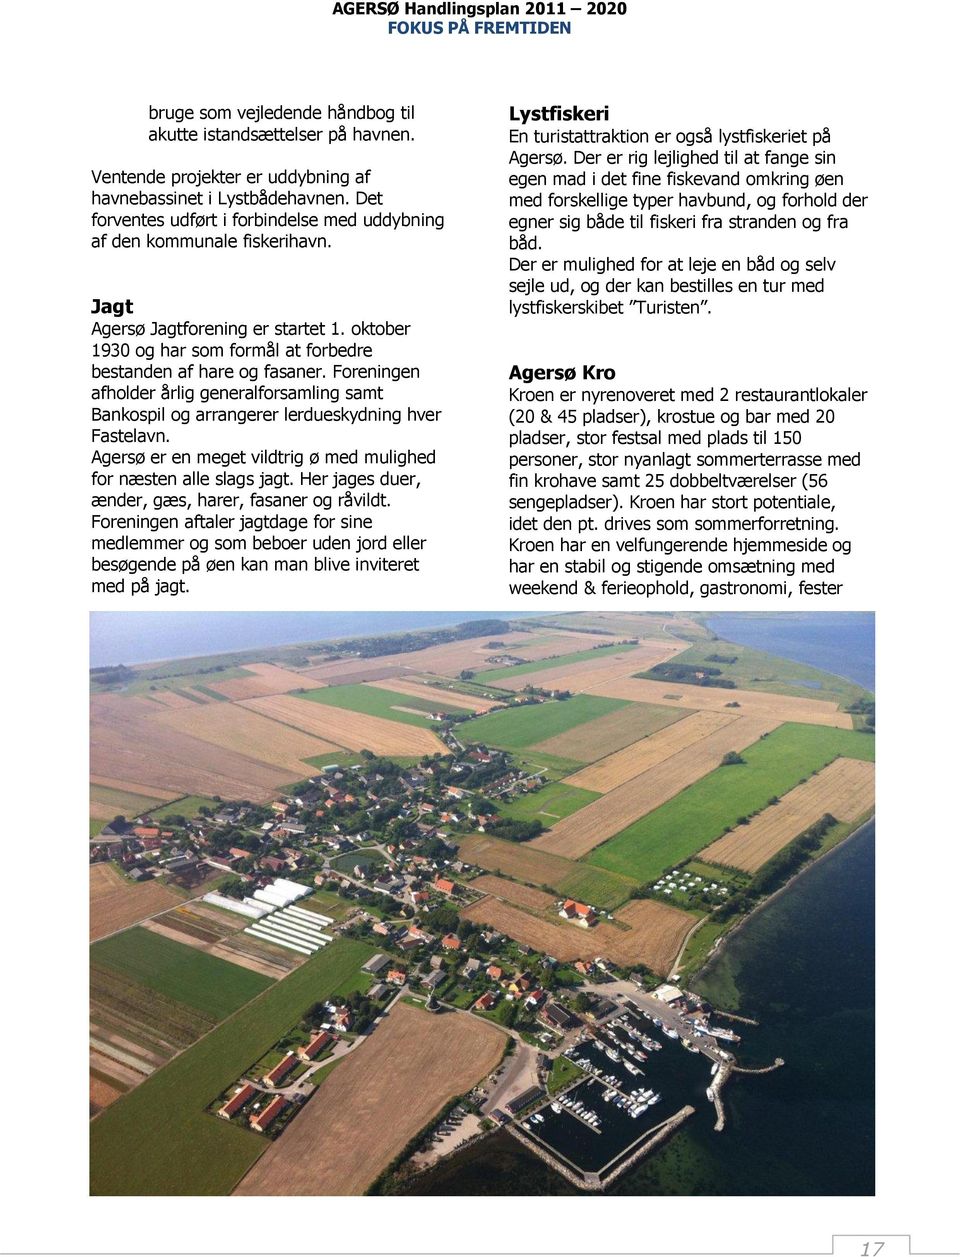 Agersø Handlingsplan Fokus på fremtiden - PDF Gratis download